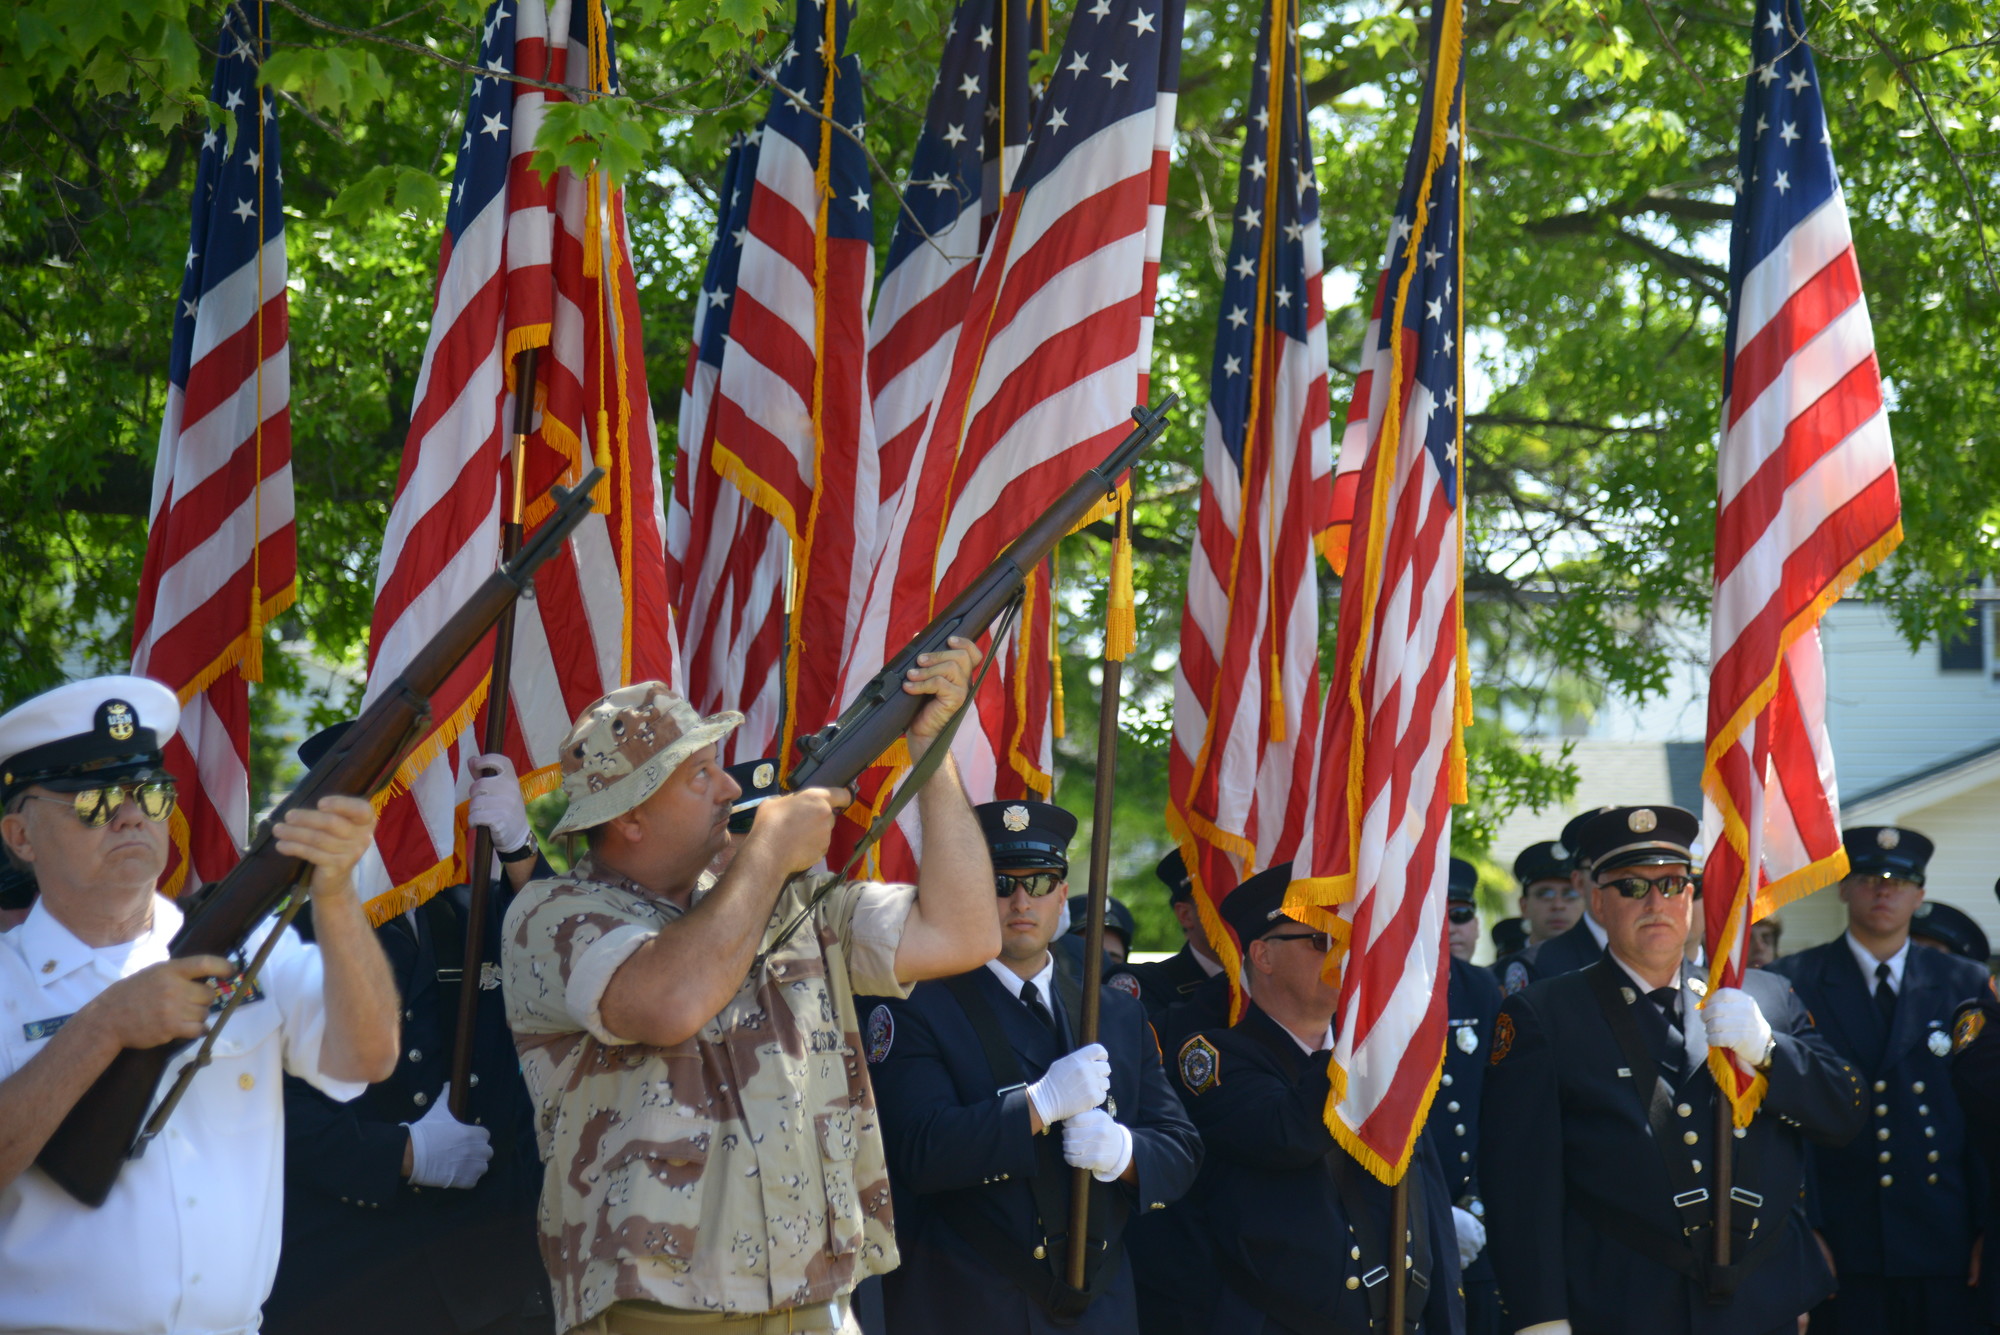 Veterans Offer a traditional gun salute.